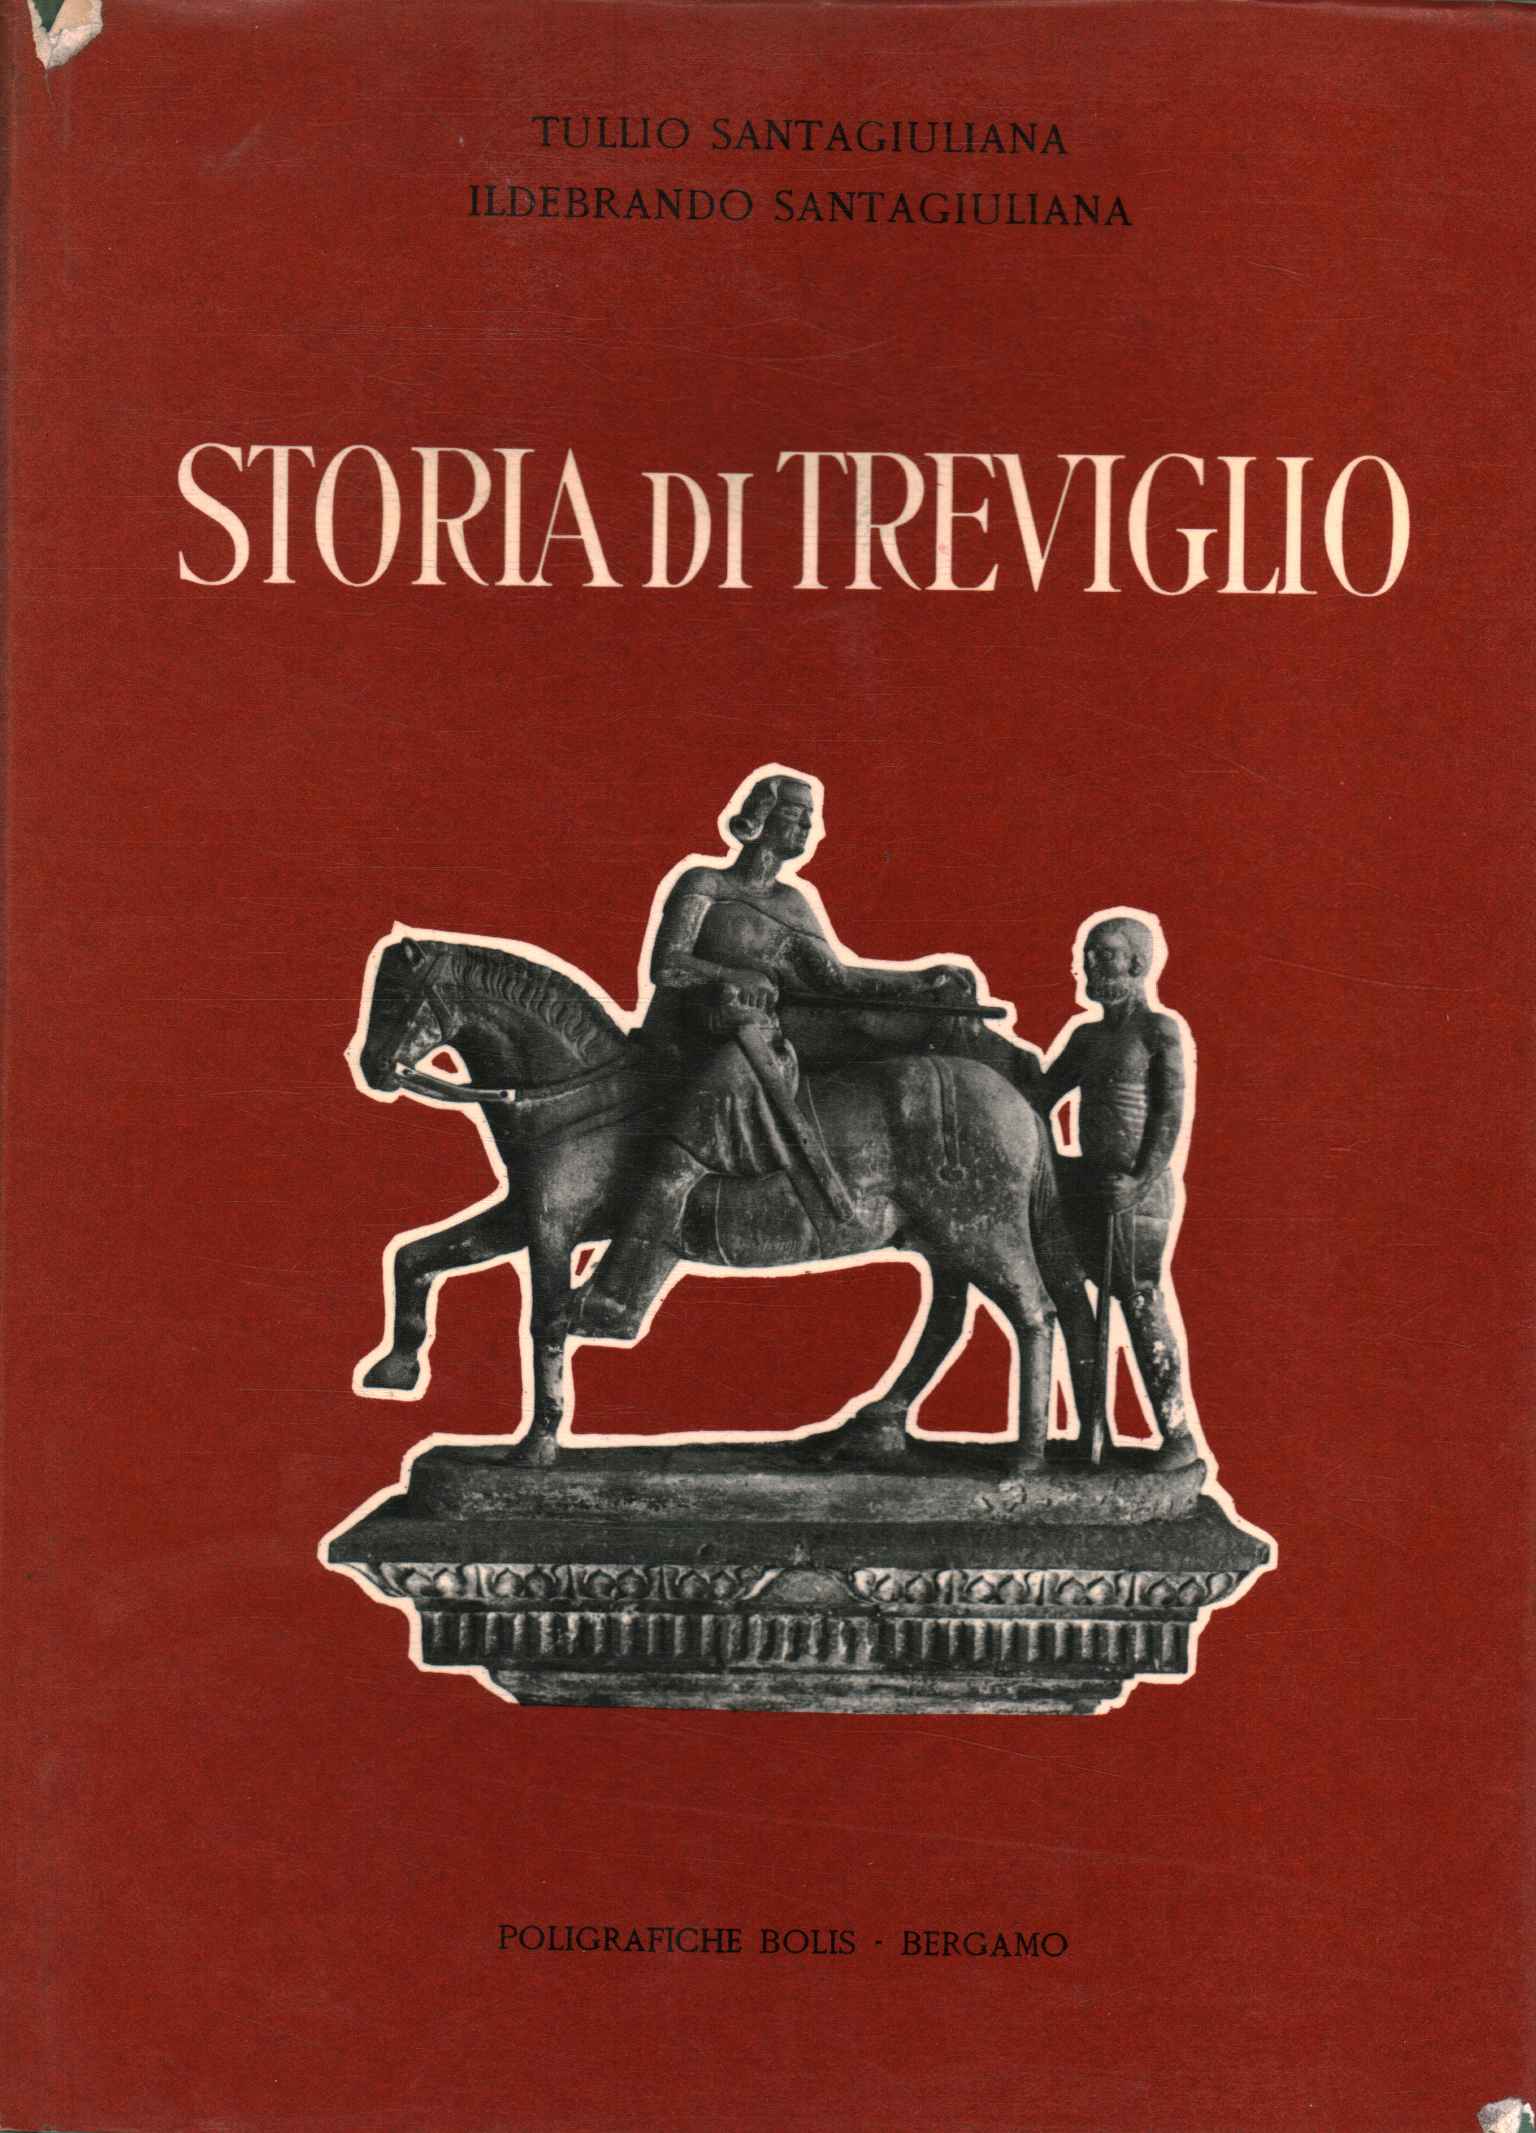 History of Treviglio